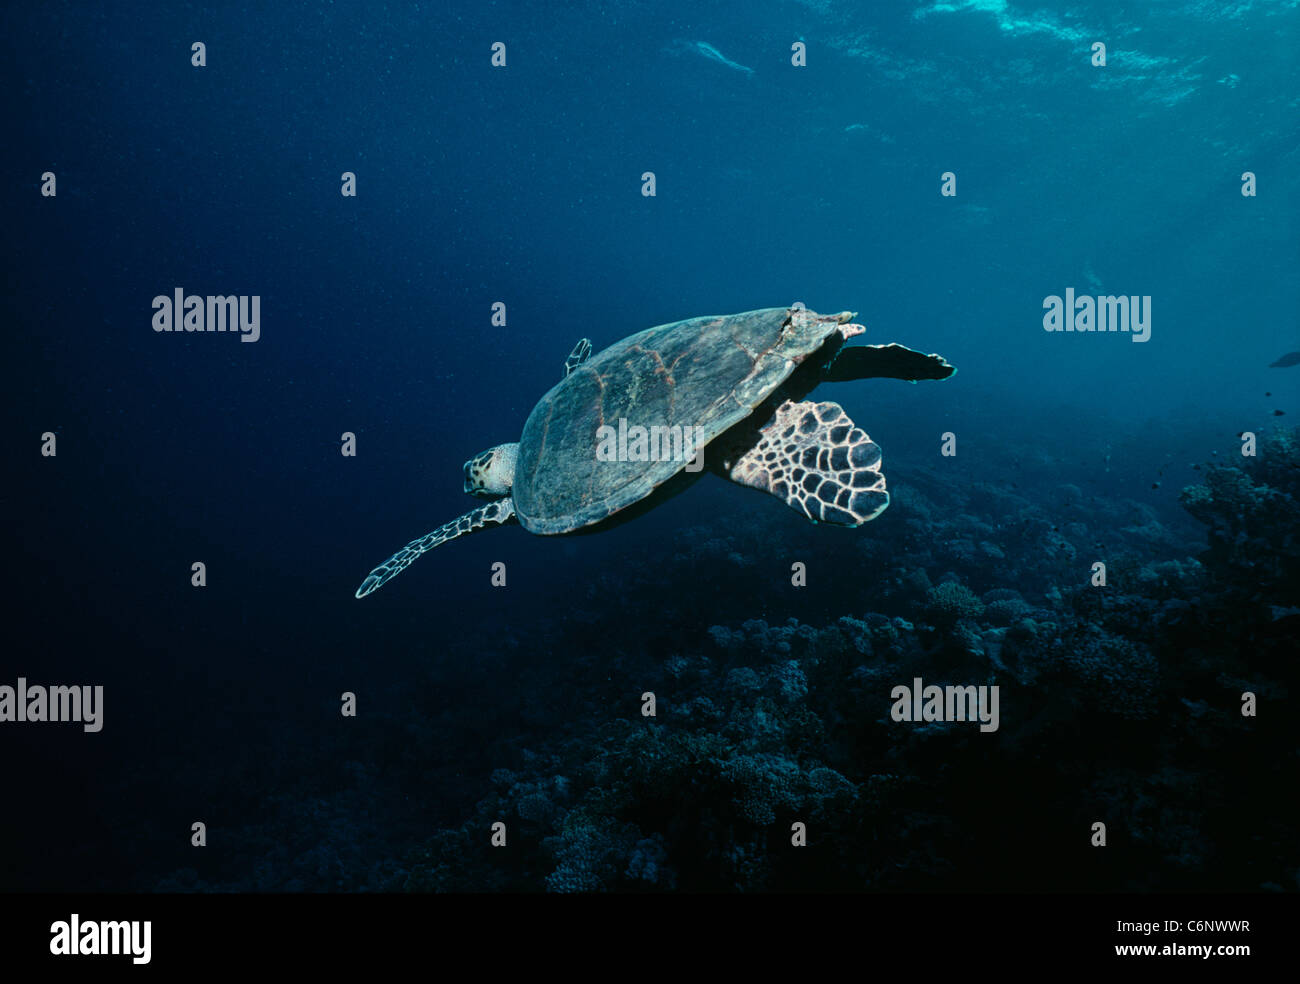 La tortue imbriquée (Eretmochelys imbricata) nager près d'un récif de corail. L'Egypte, Mer Rouge Banque D'Images